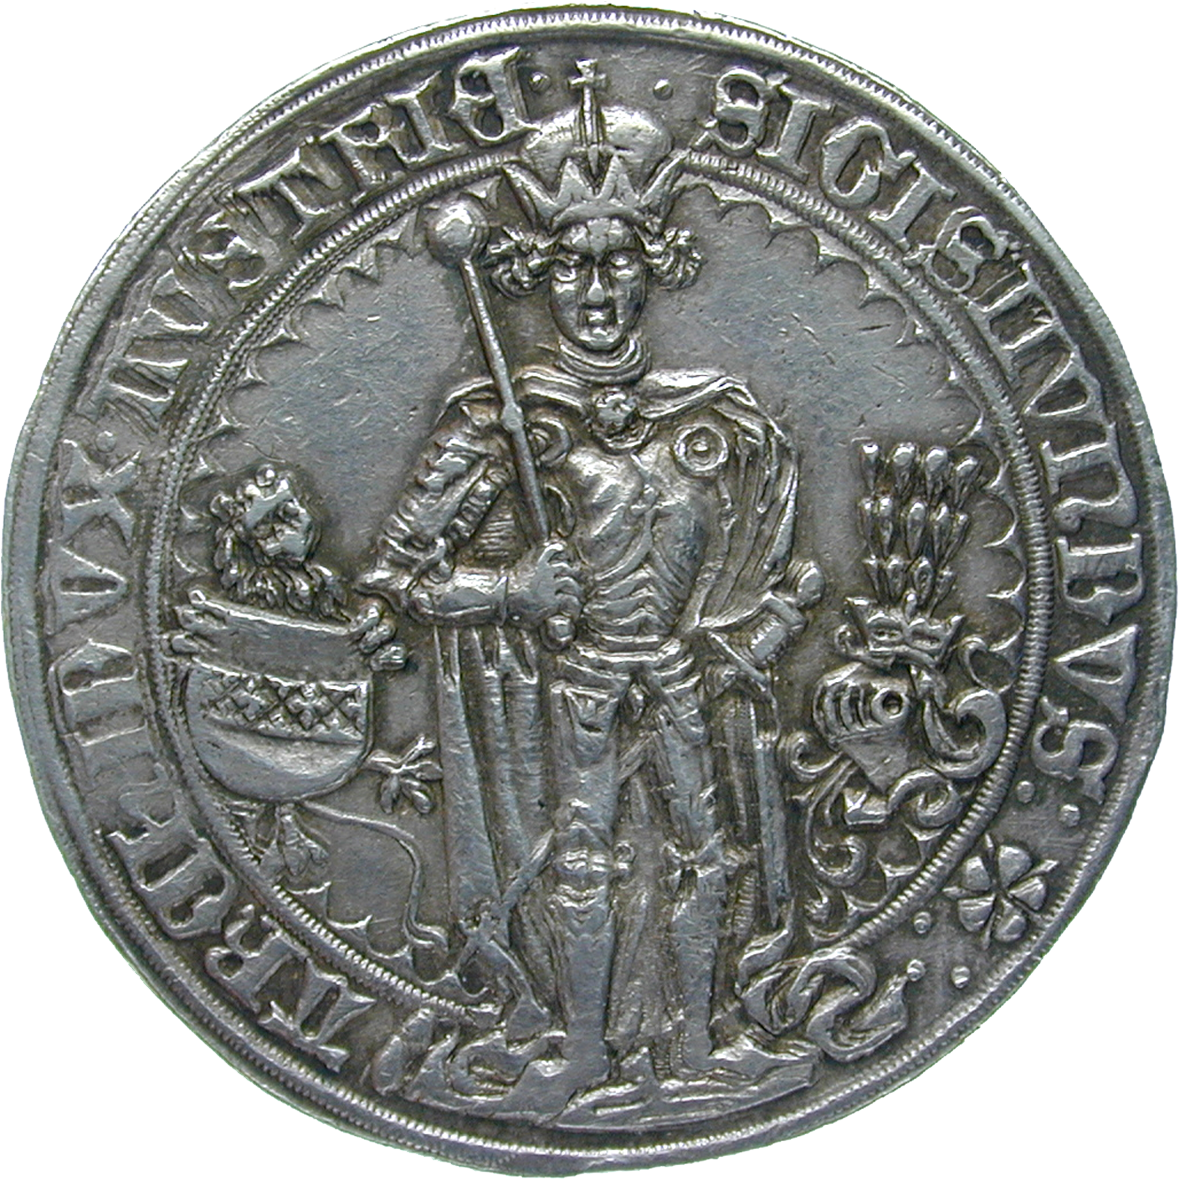 Heiliges Römisches Reich, Erzherzogtum Österreich, Grafschaft Tirol, Sigismund der Münzreiche, Guldiner 1486 (obverse)